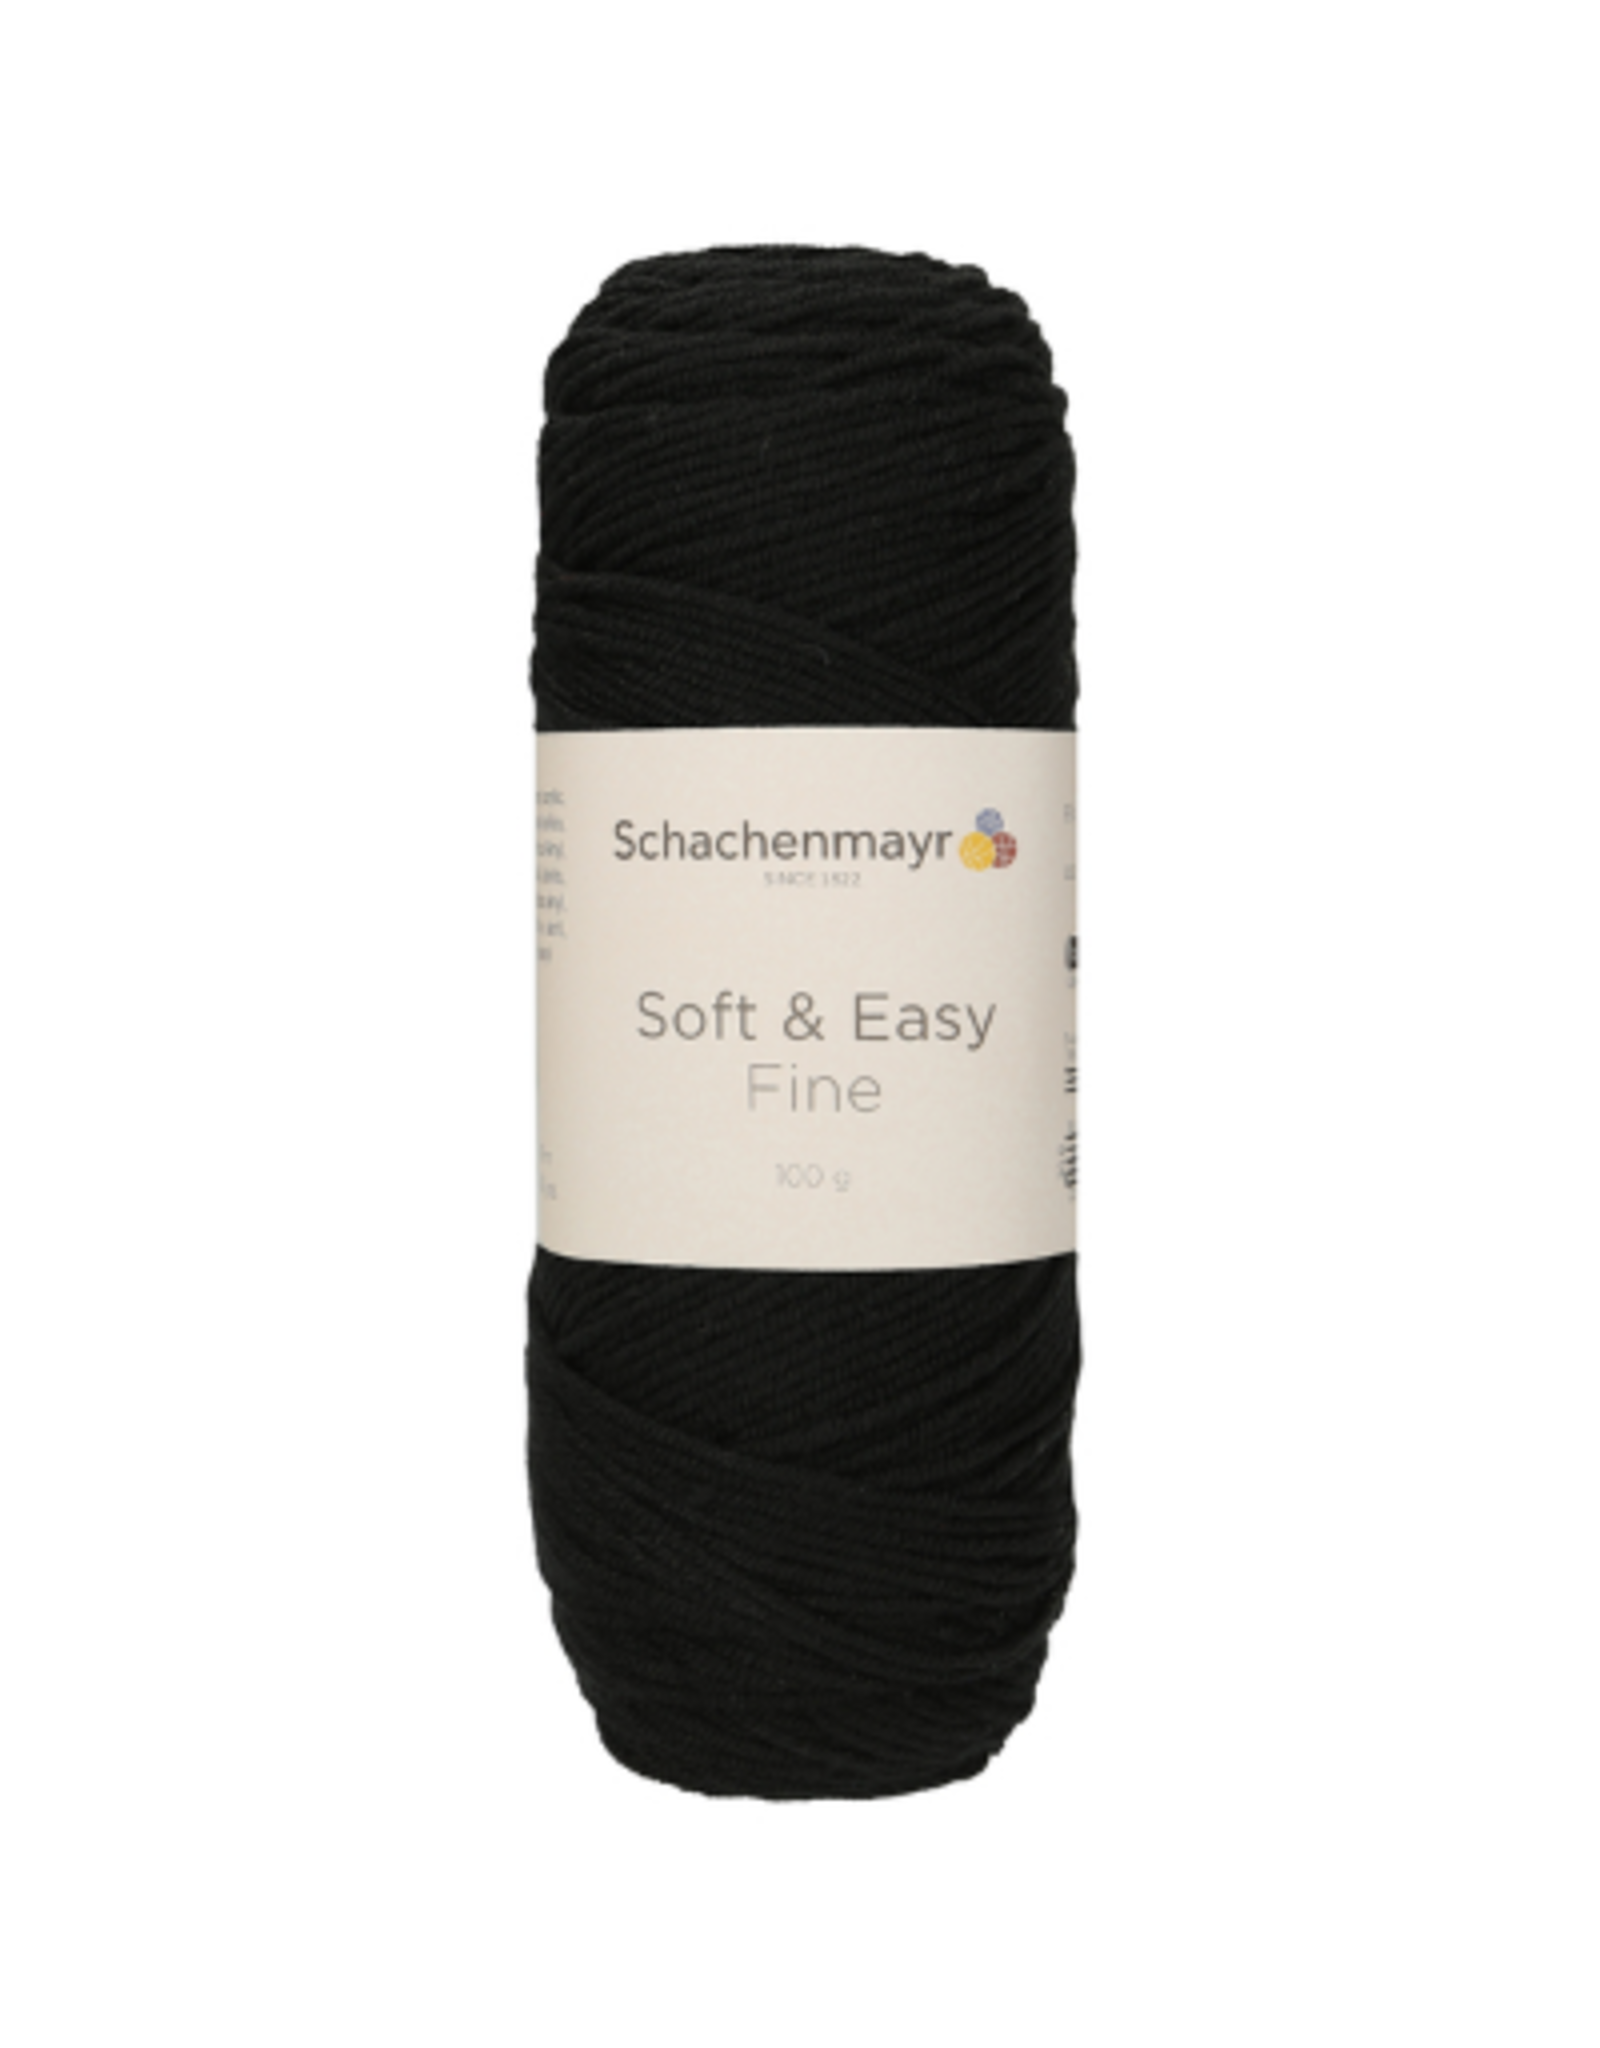 Schachenmayr Schachenmayr Soft & Easy fine 99